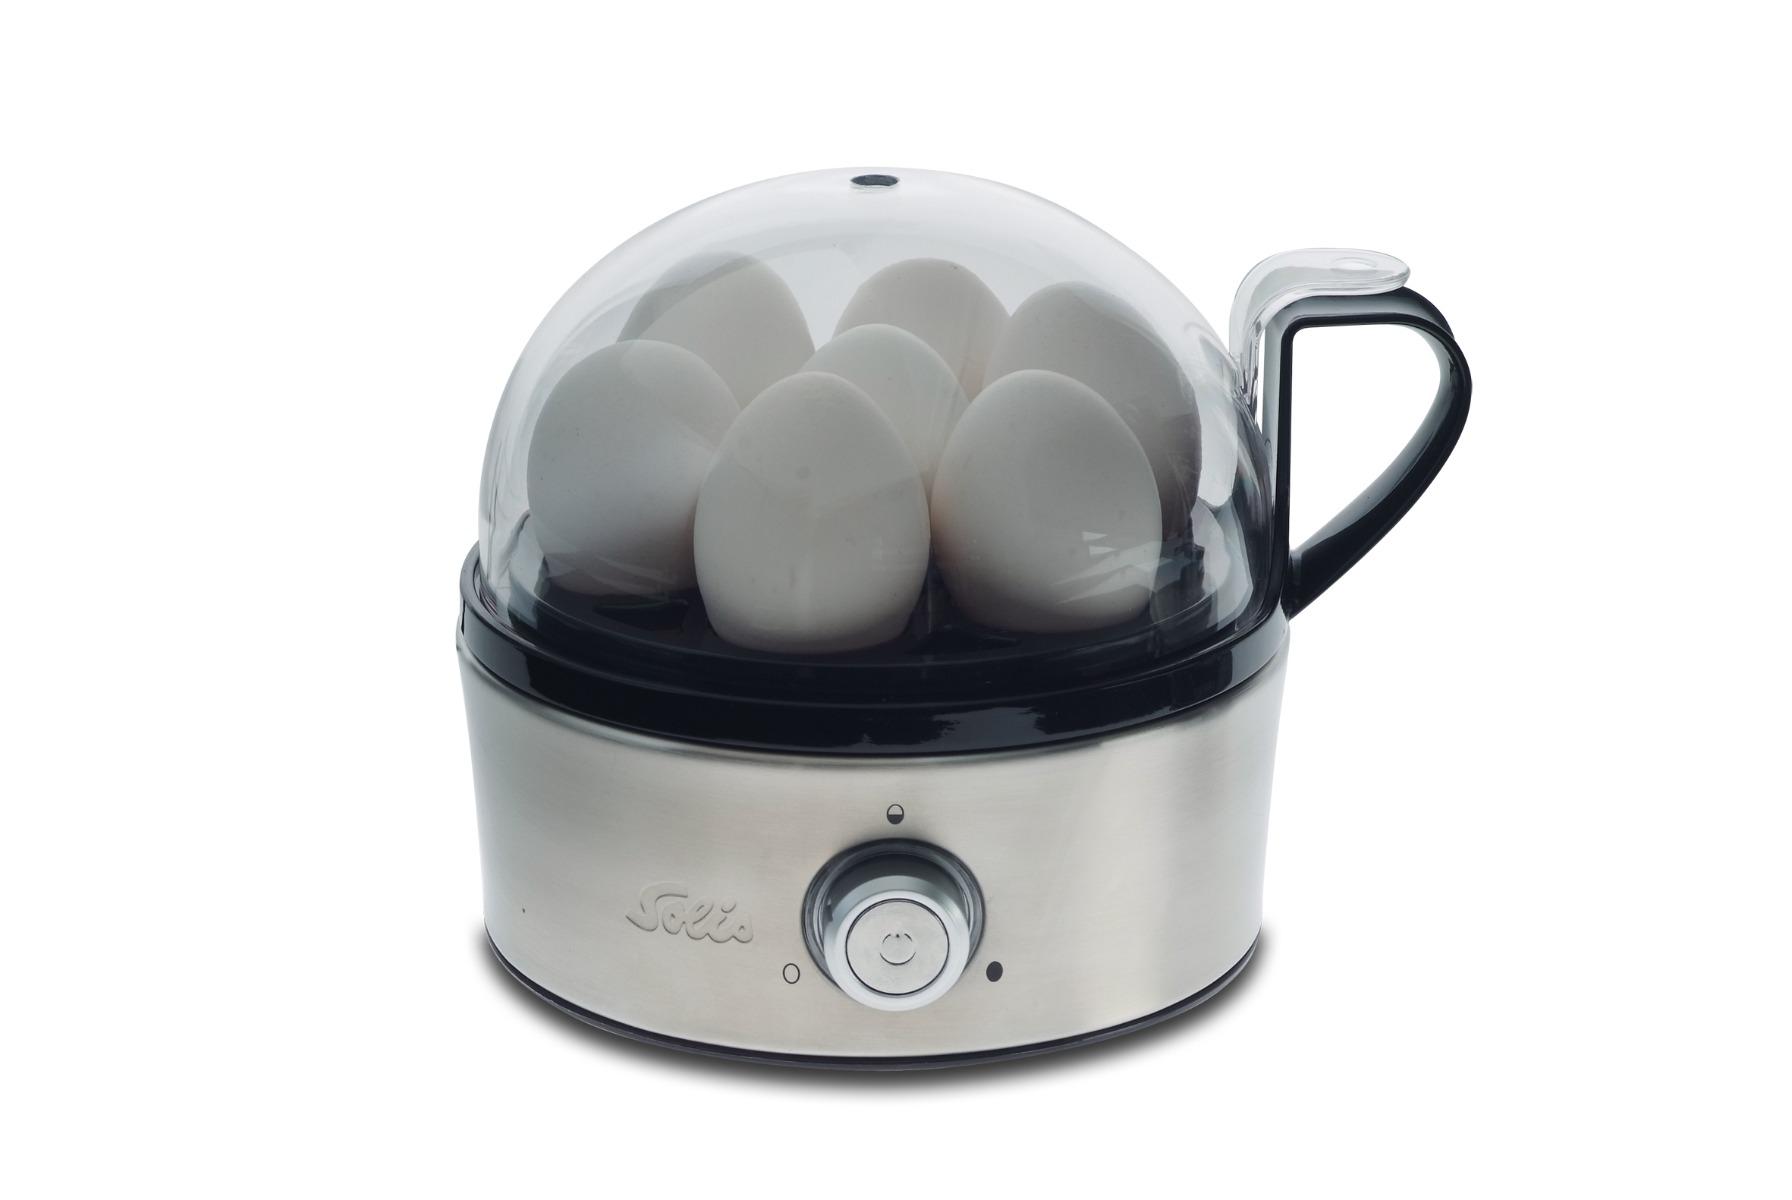 جهاز سلق البيض والخضار 7 بيضات 400 واط سوليس Solis Egg Boiler & Vegetables Steamer